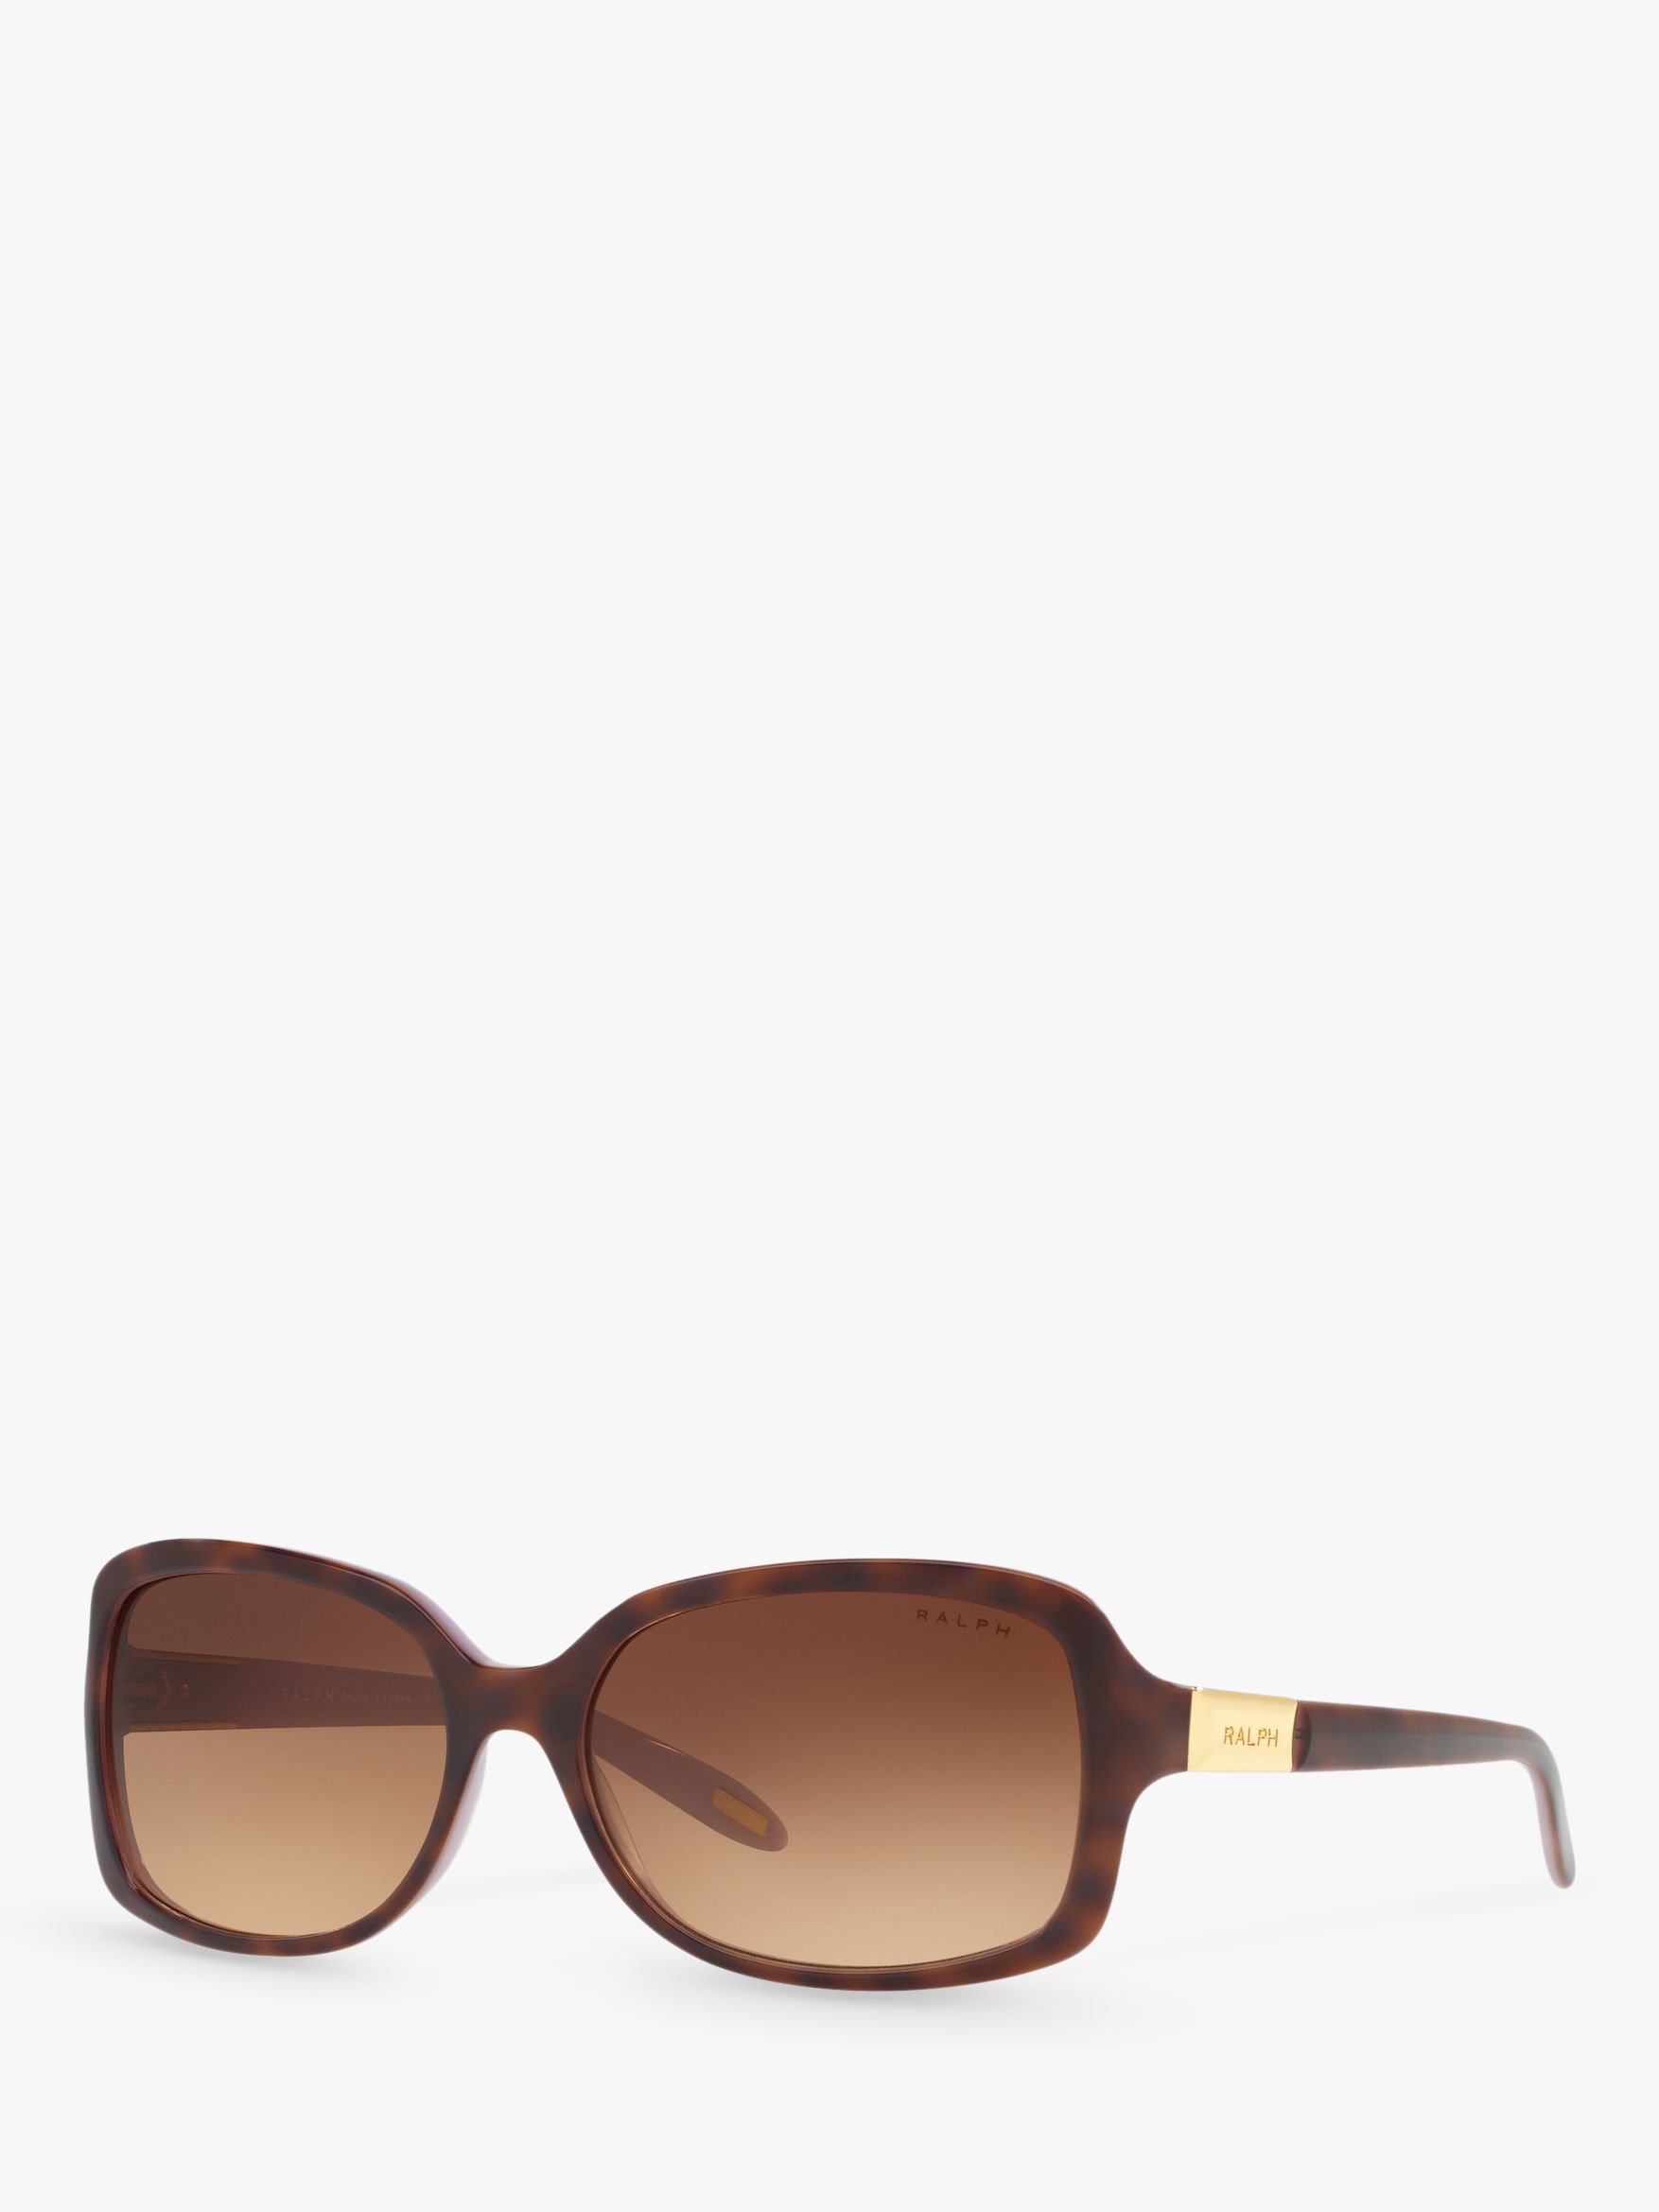 Polo Ralph Lauren RA5130 Women's Rectangular Sunglasses, Tortoise/Violet